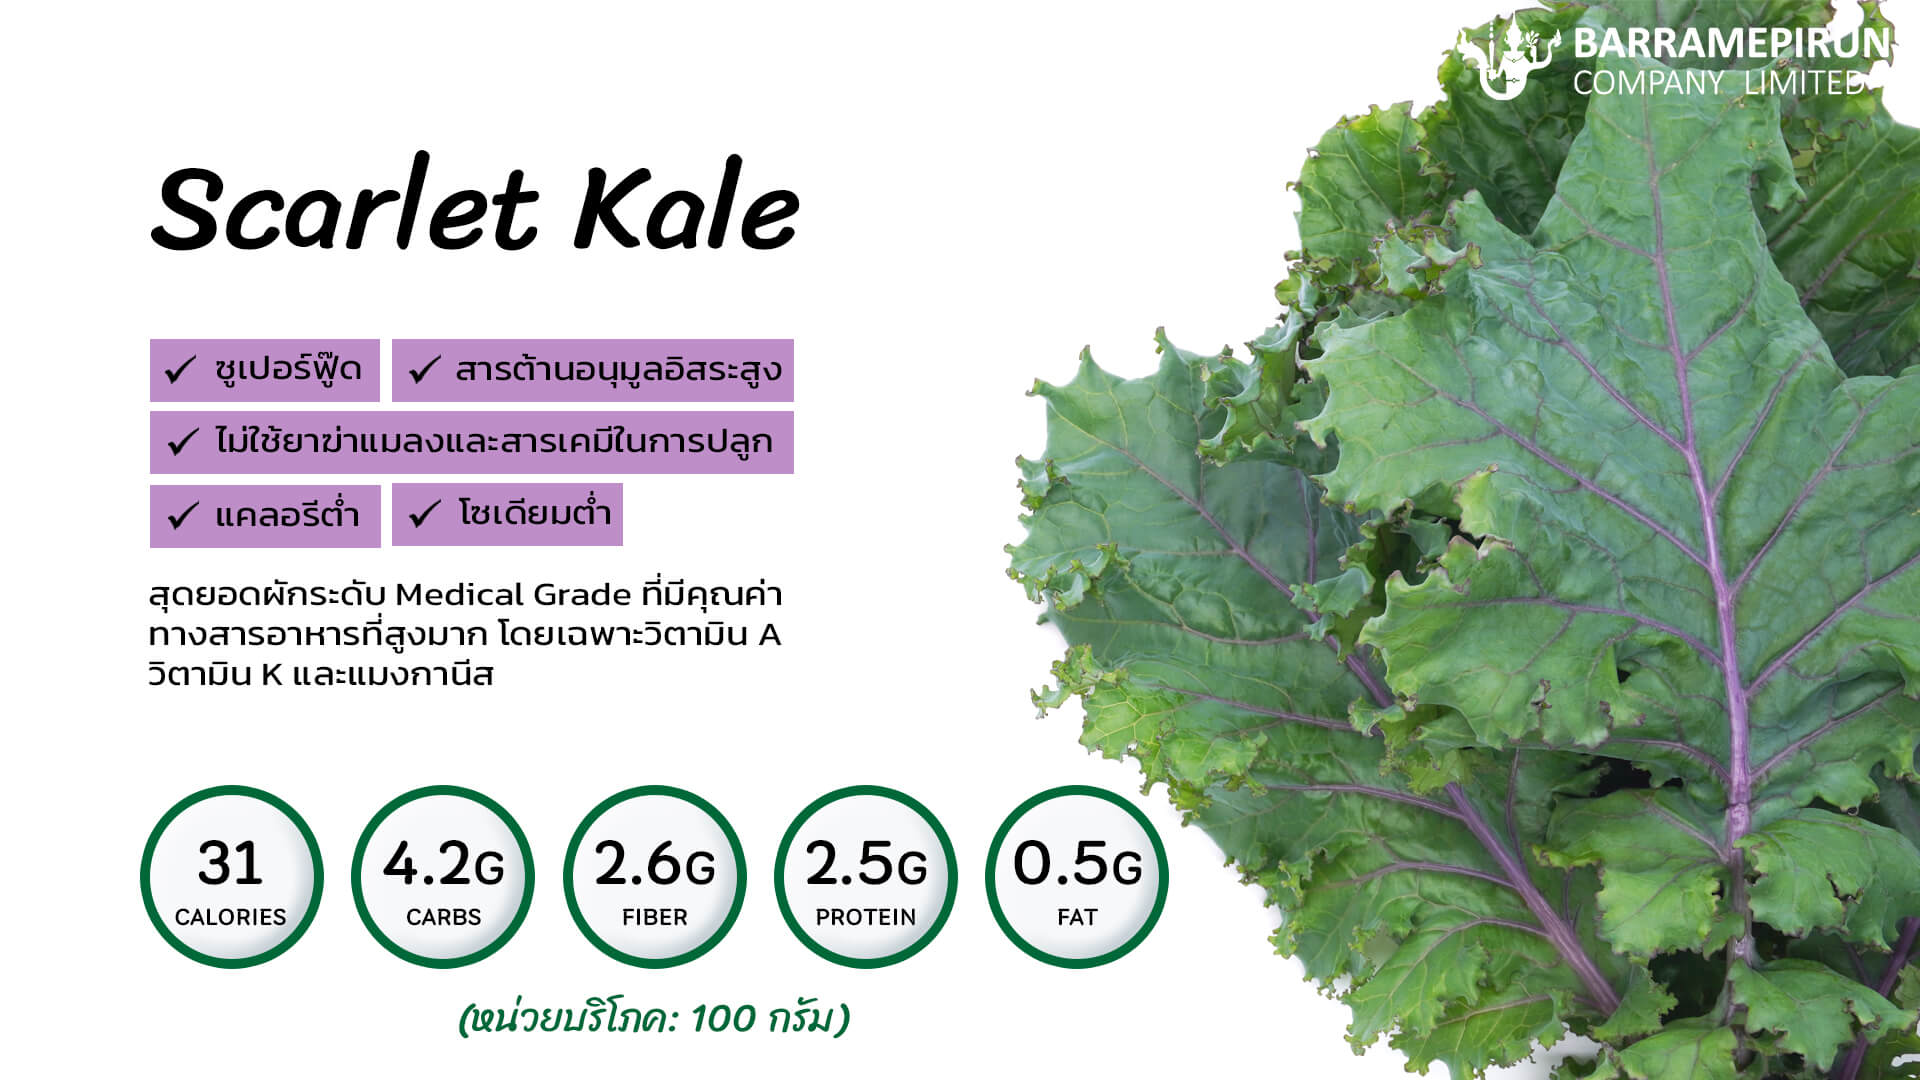 เคลสการ์เล็ต Scarlet Kale